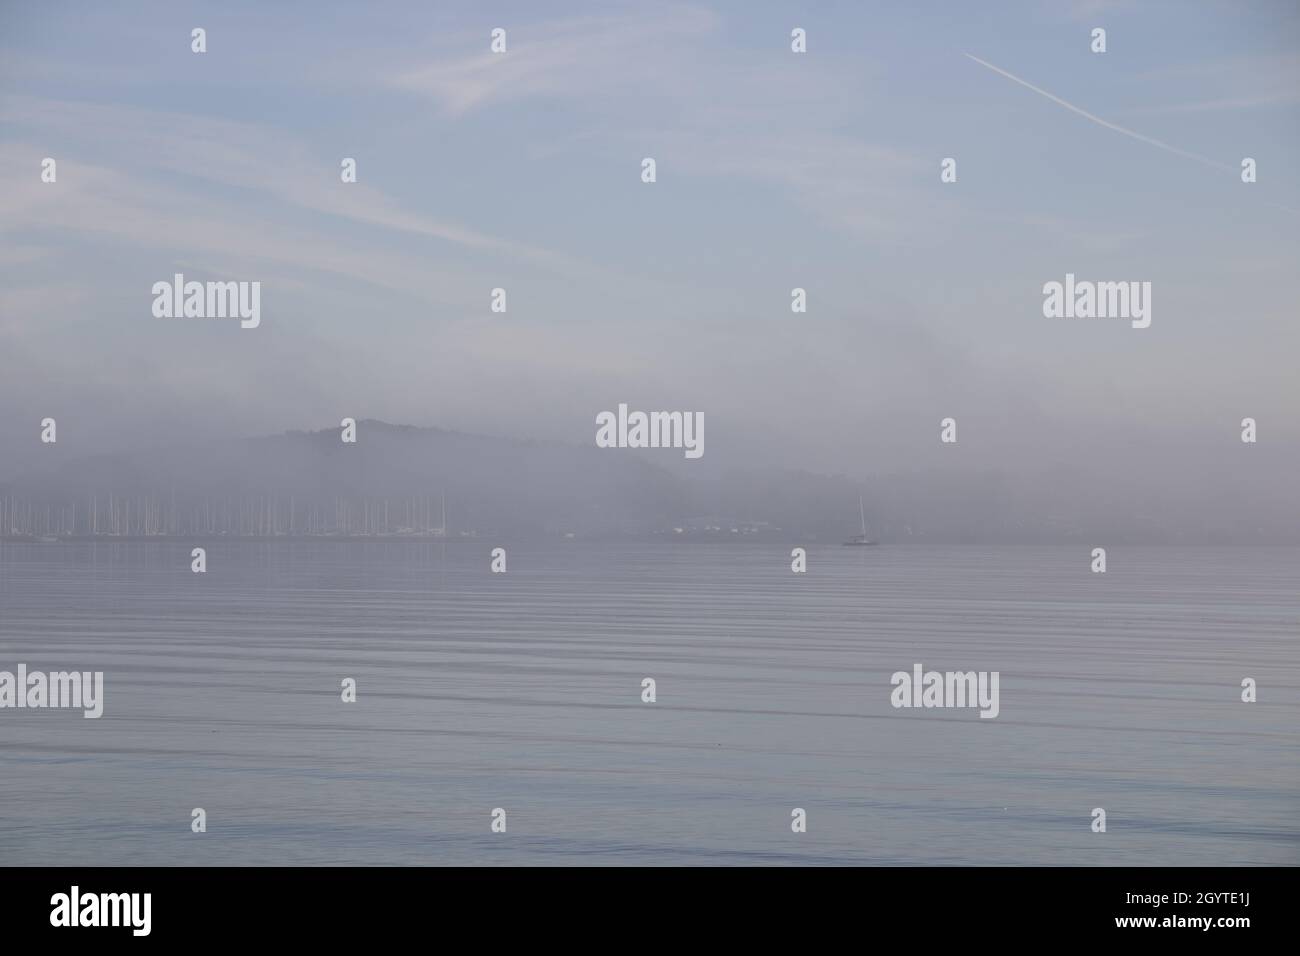 Mattina nebbia in un porto di barche a vela Foto Stock